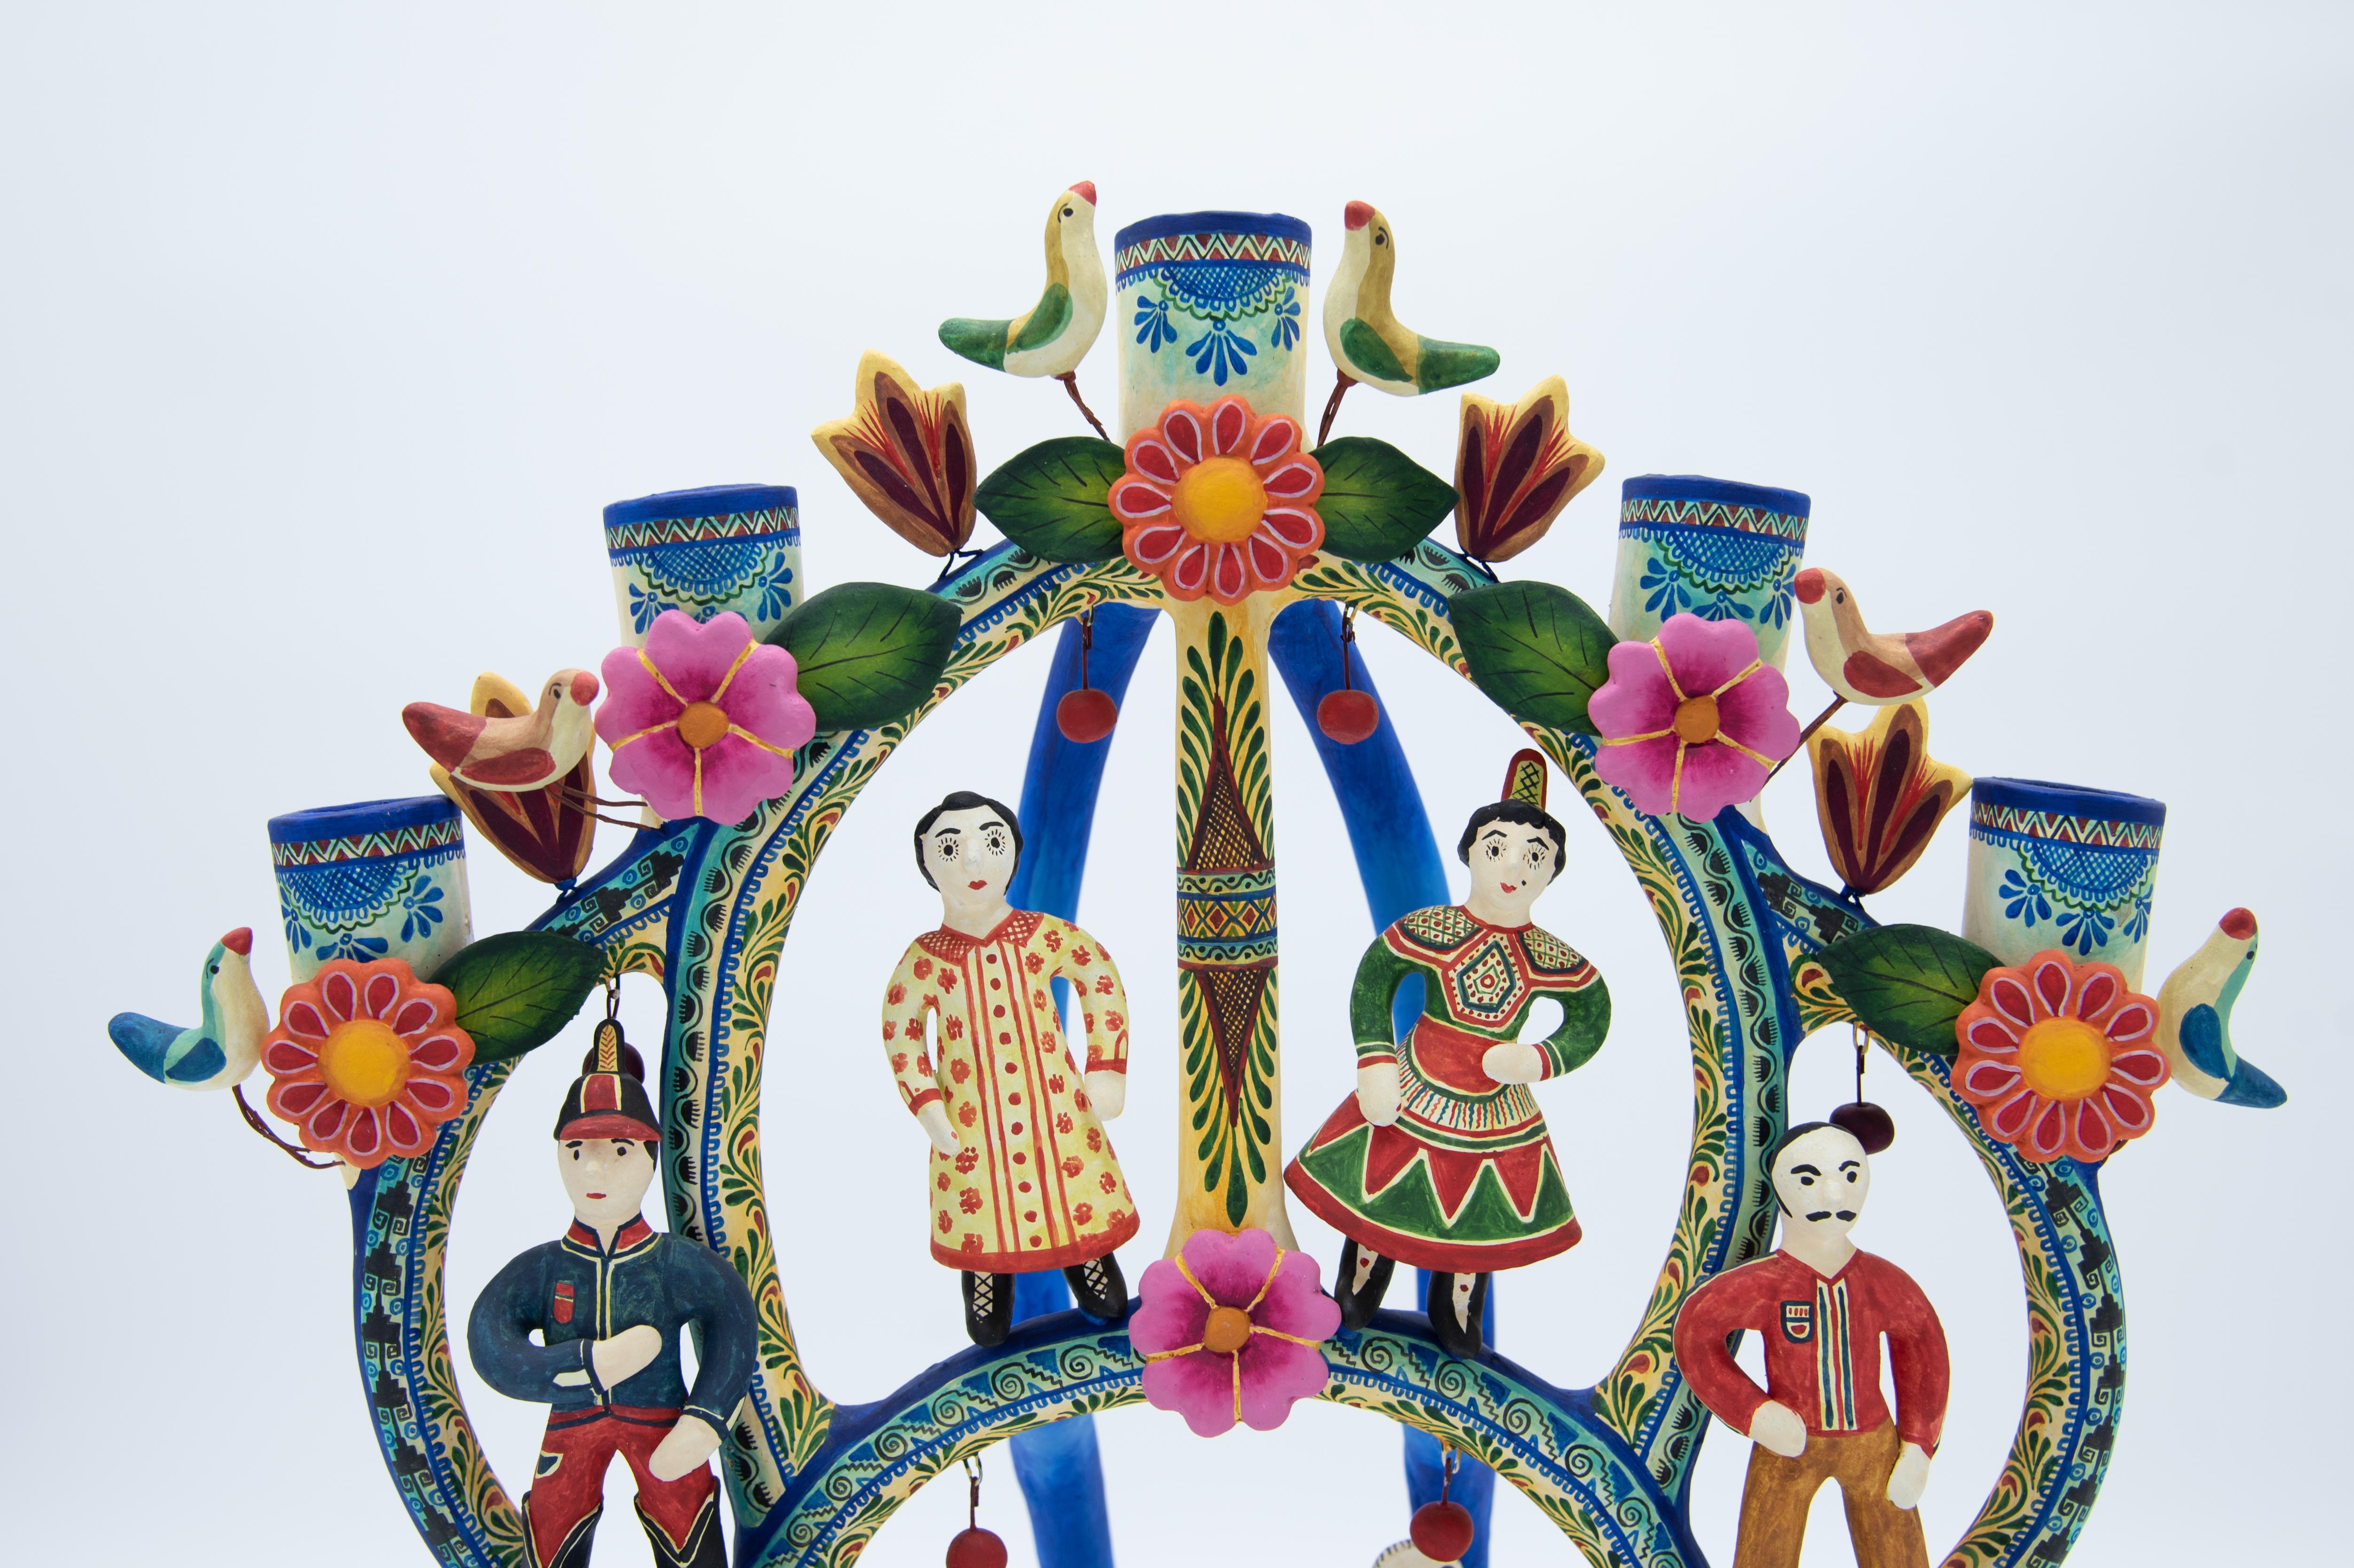 Cet arbre de vie coloré (árbol de la vida) à l'aspect de jouet est une pièce unique de Marco Antonio Castillo, fils du célèbre artiste Alfonso Castillo. Réalisée à la main avec de l'argile naturelle et peinte avec des couleurs acryliques, cette